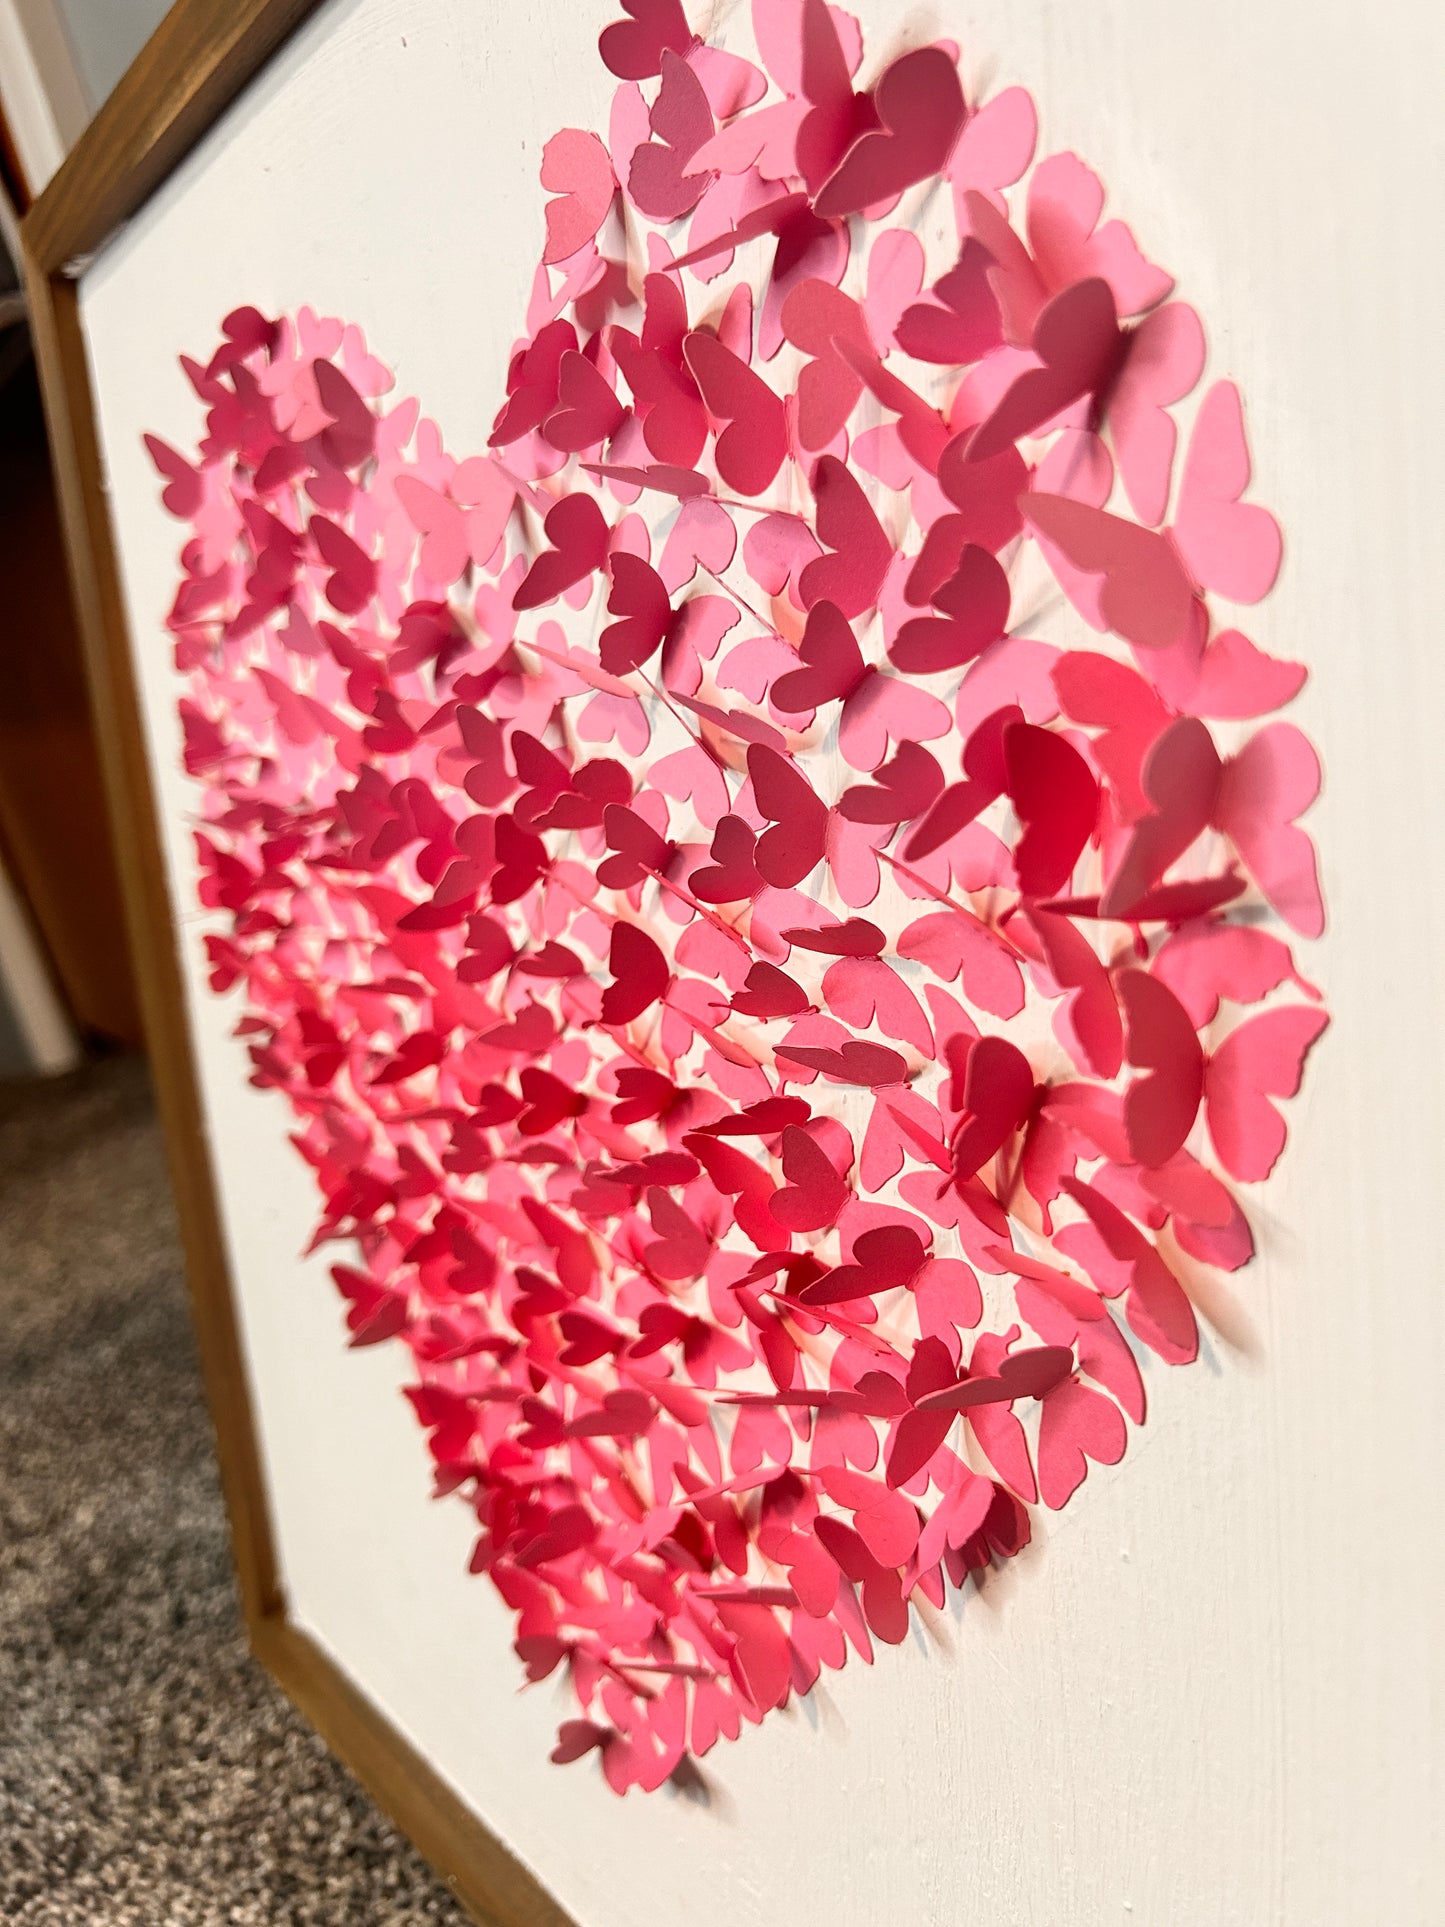 Flyaway Butterfly Heart | Paper Butterfly Heart on Wood Canvas | Paper Crafts | Flyaway Heart